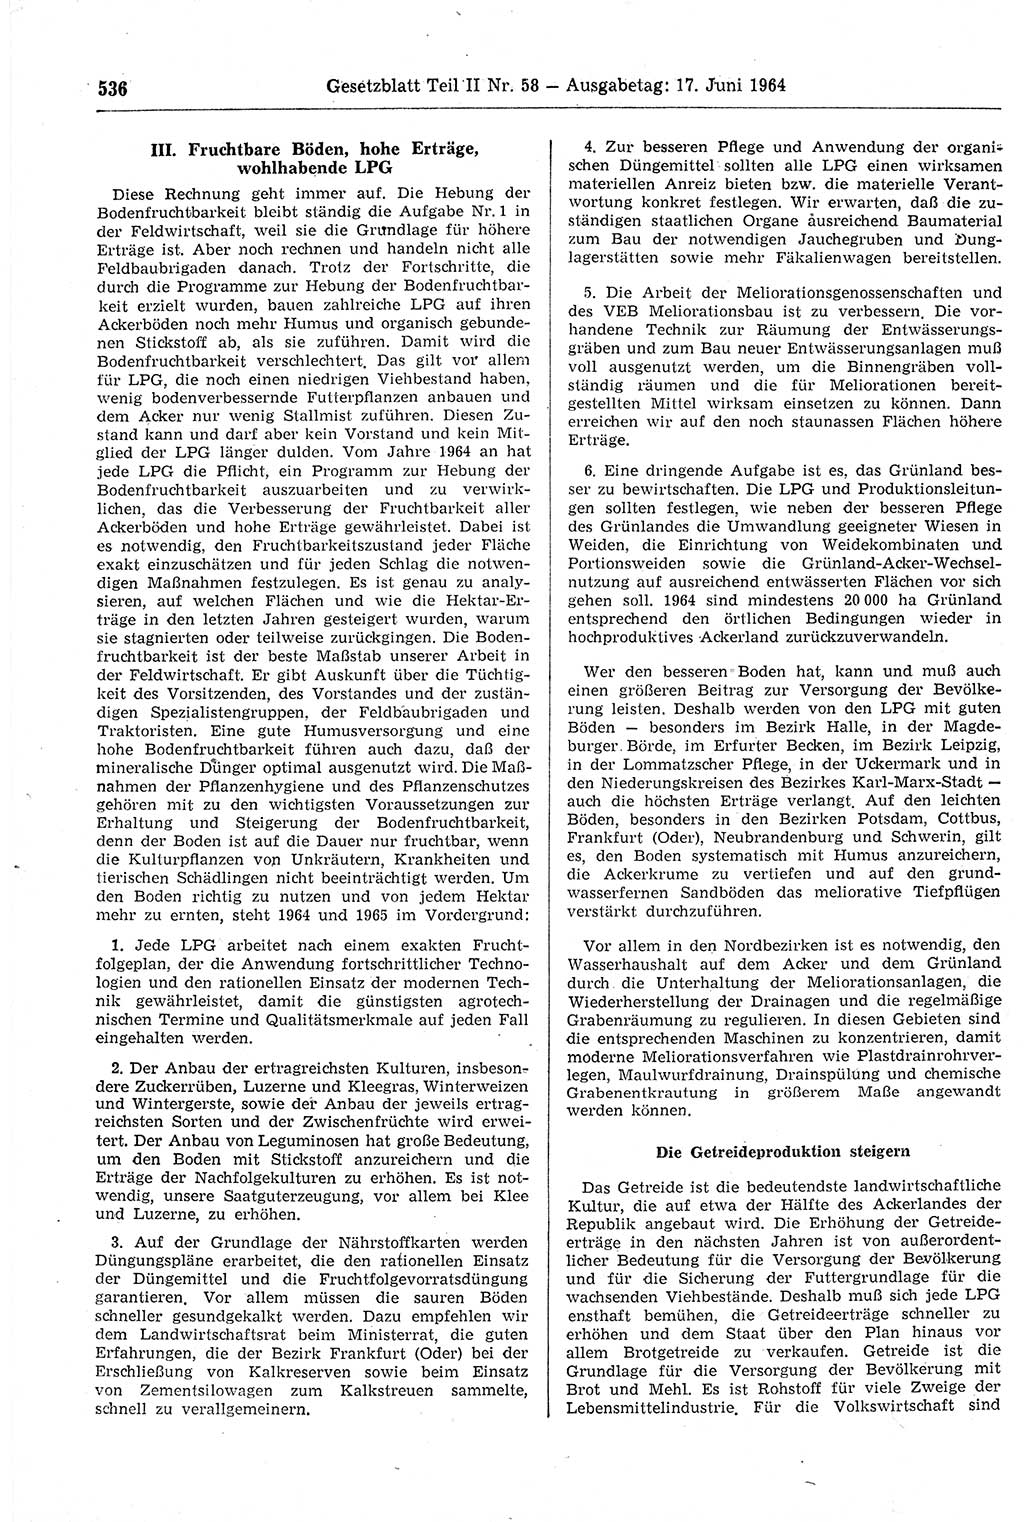 Gesetzblatt (GBl.) der Deutschen Demokratischen Republik (DDR) Teil ⅠⅠ 1964, Seite 536 (GBl. DDR ⅠⅠ 1964, S. 536)